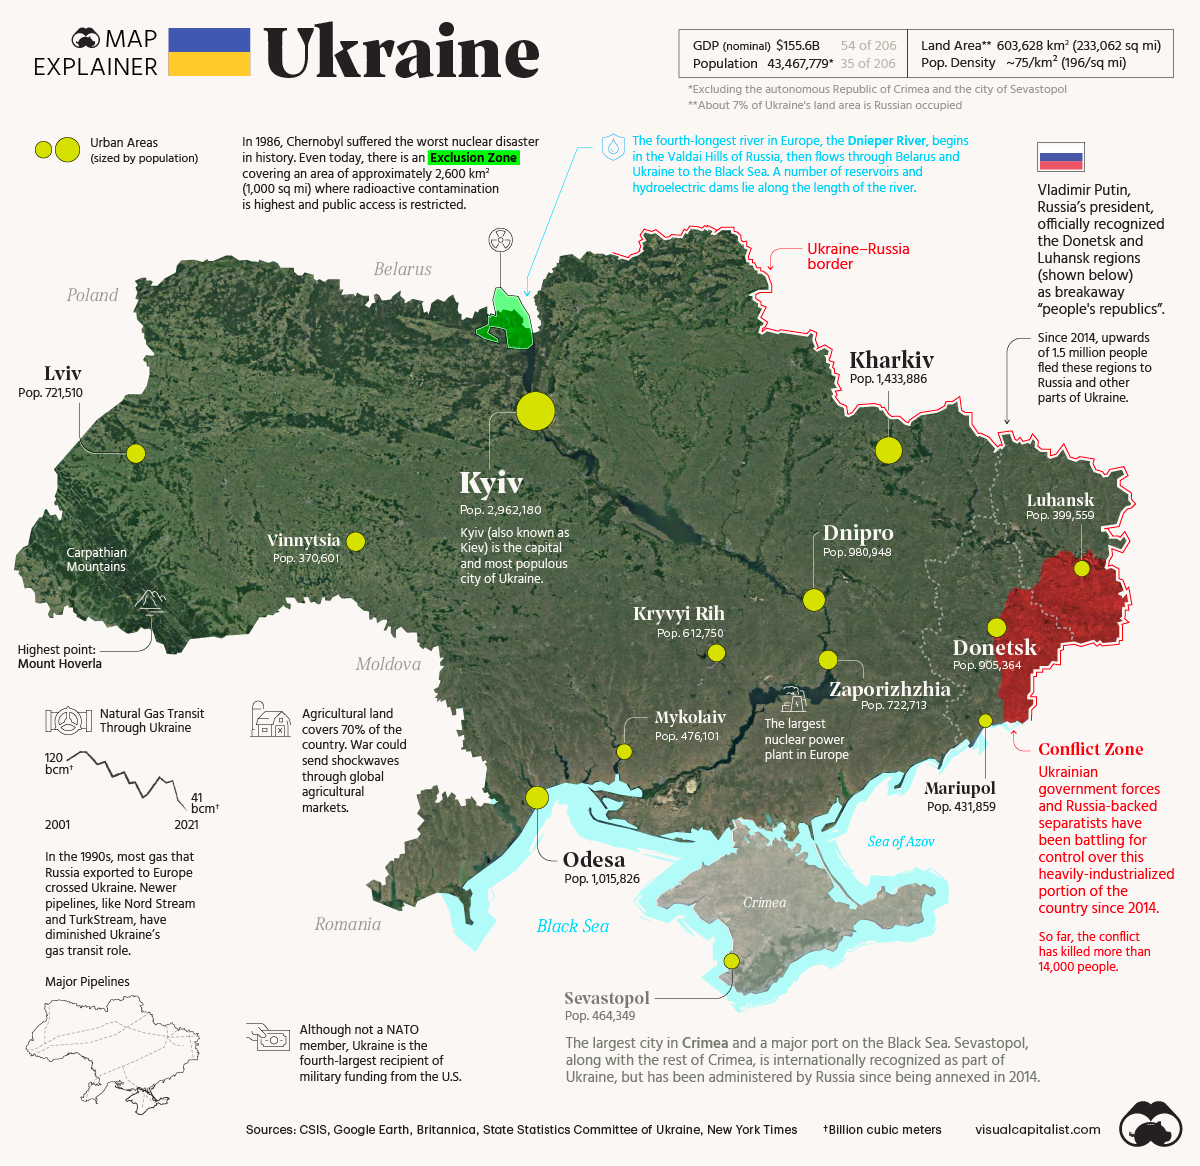 Visual Capitalist: Map explainer on Ukraine -> https://www.visualcapitalist.com/map-explainer-ukraine/